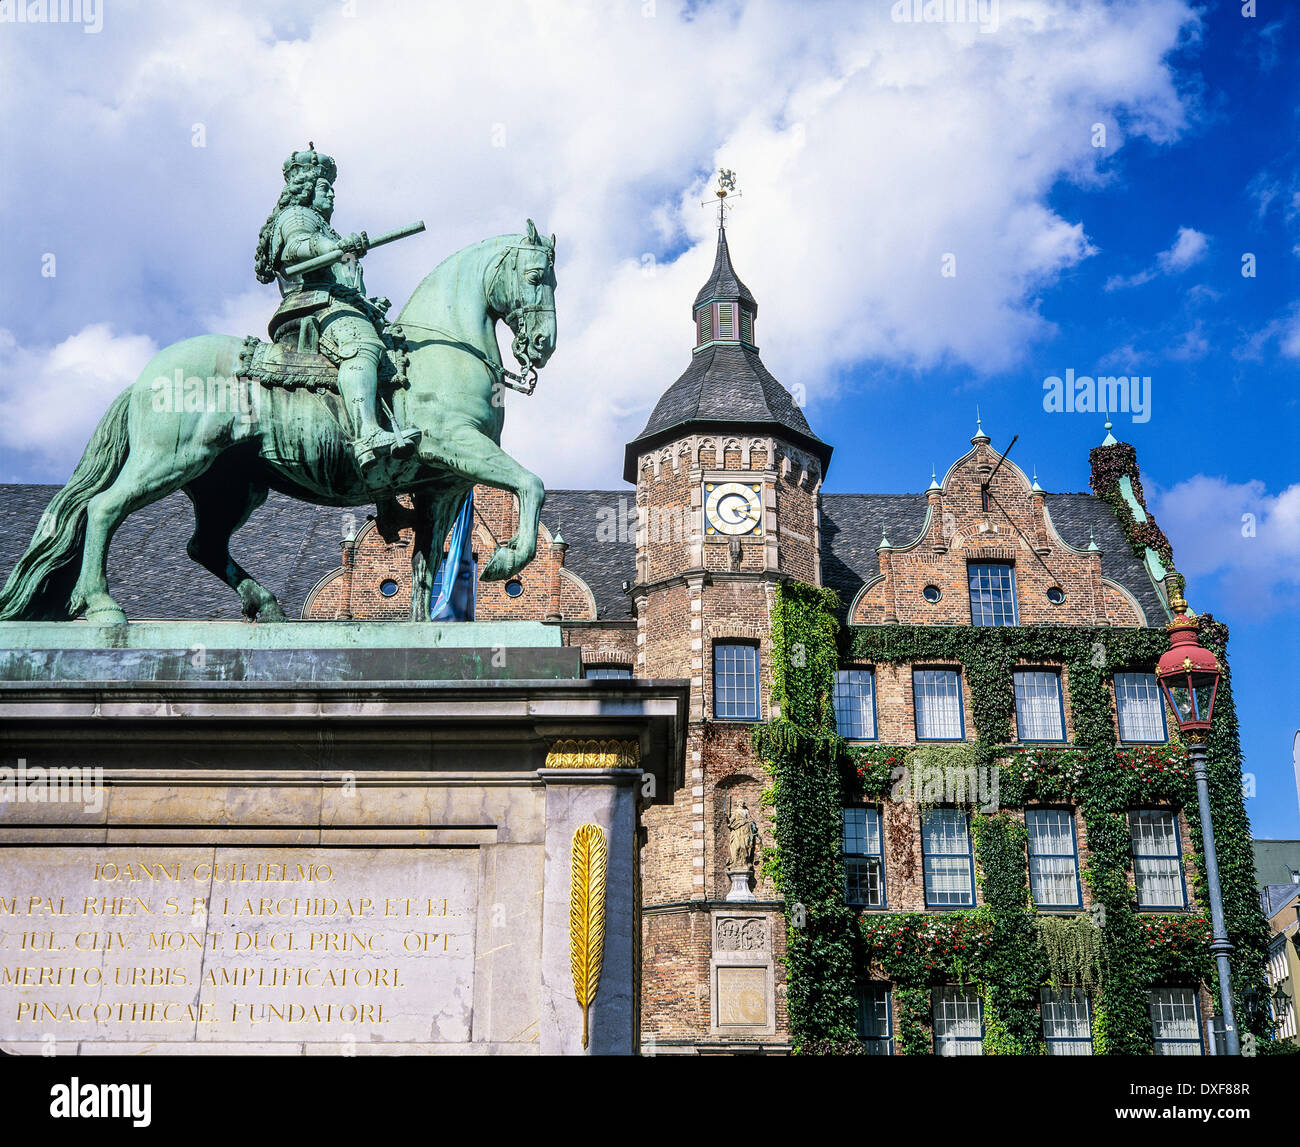 Johann Wilhelm II, - Jan Wellem secondo elettore statua equestre e vecchio municipio del XVI secolo Düsseldorf Germania Europa Foto Stock